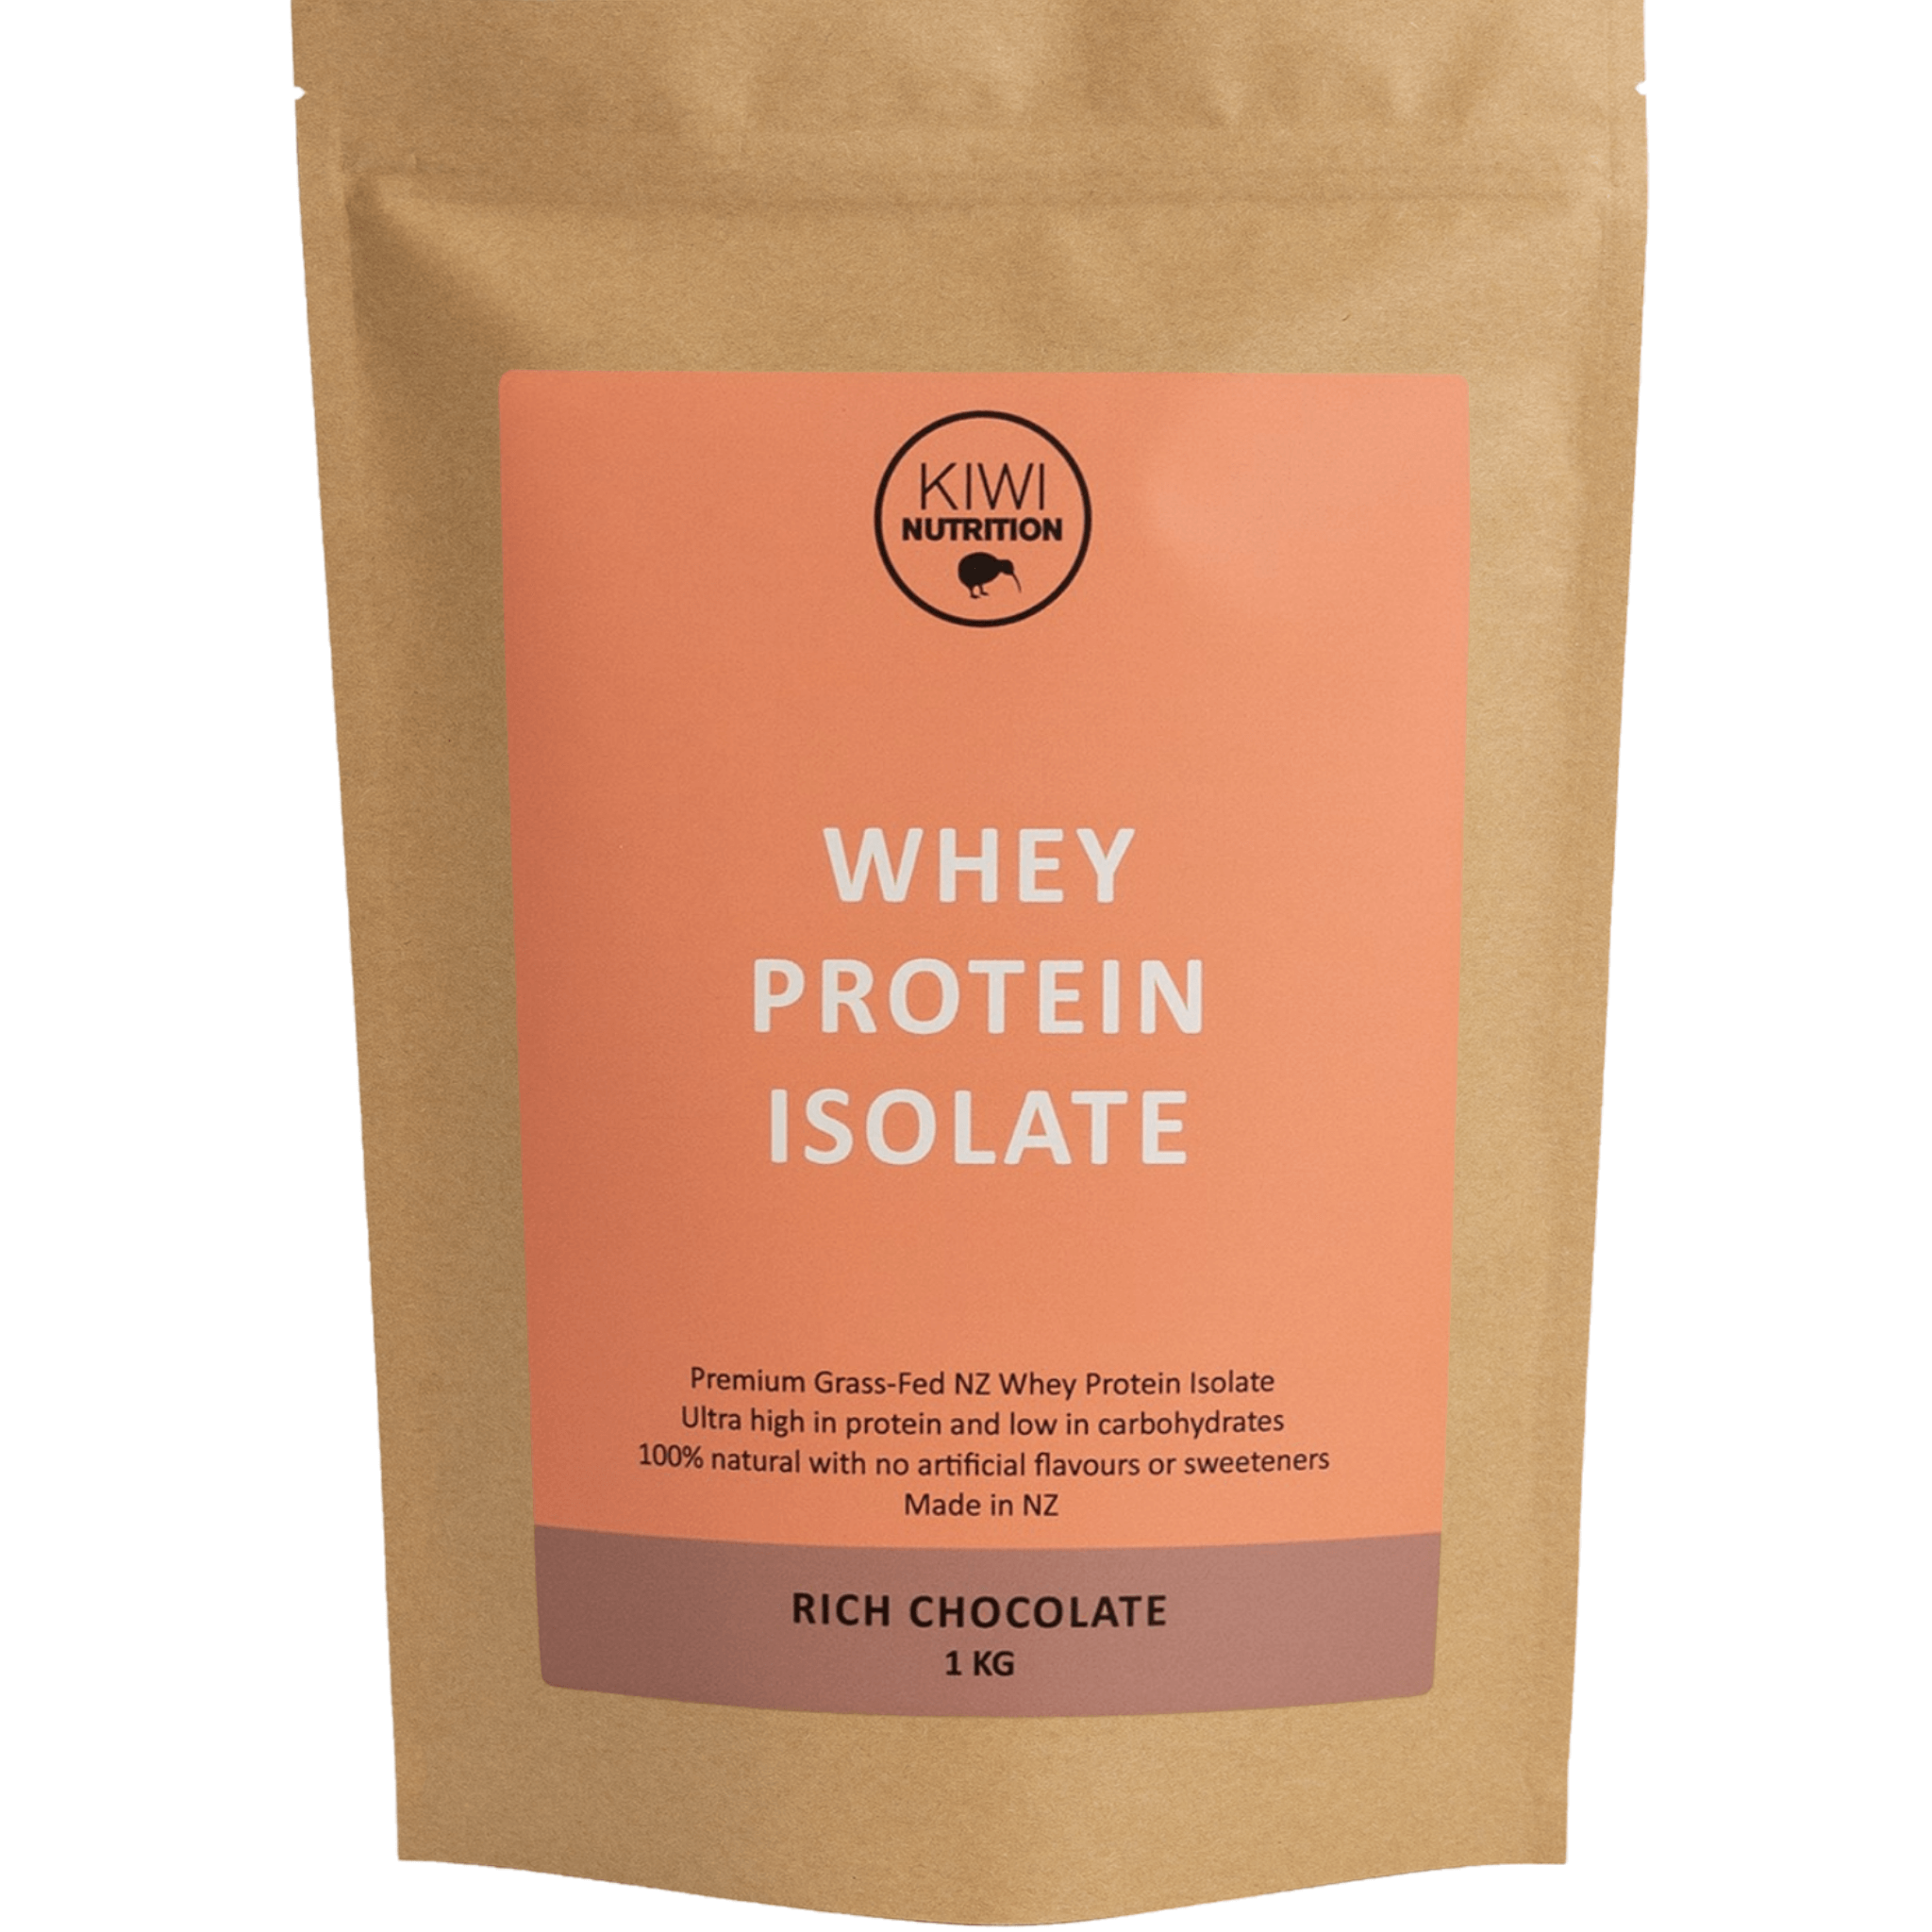 Protein Powder NZ, NZ Whey Protein Isolate, Kiwi Nutrition Chocolate Whey Protein Isolate